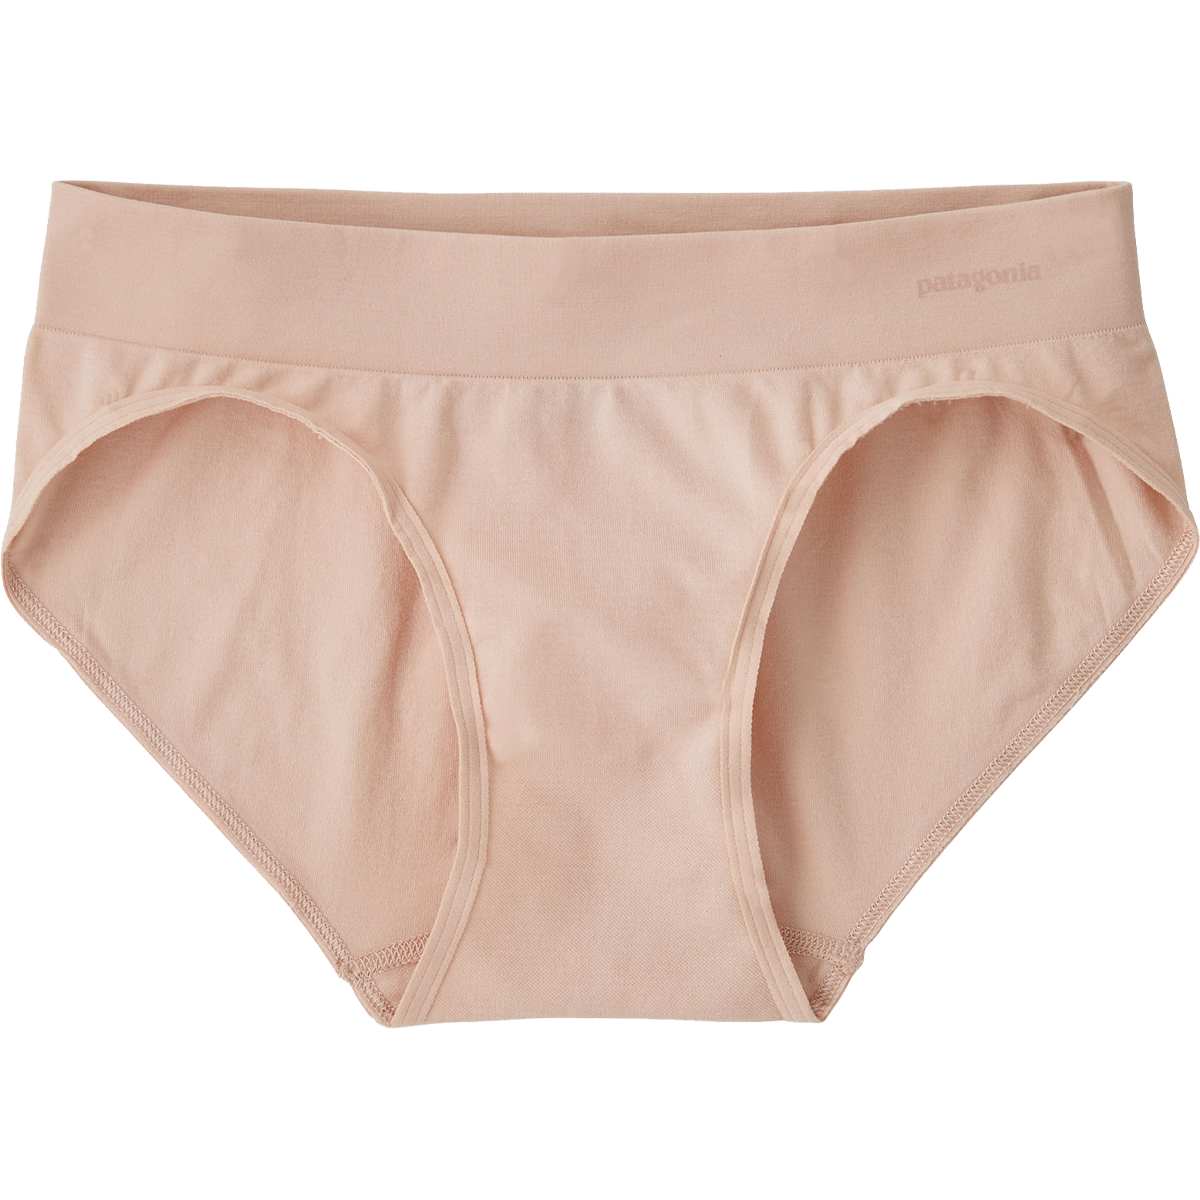 Women's Florianne Underwear – Sports Basement